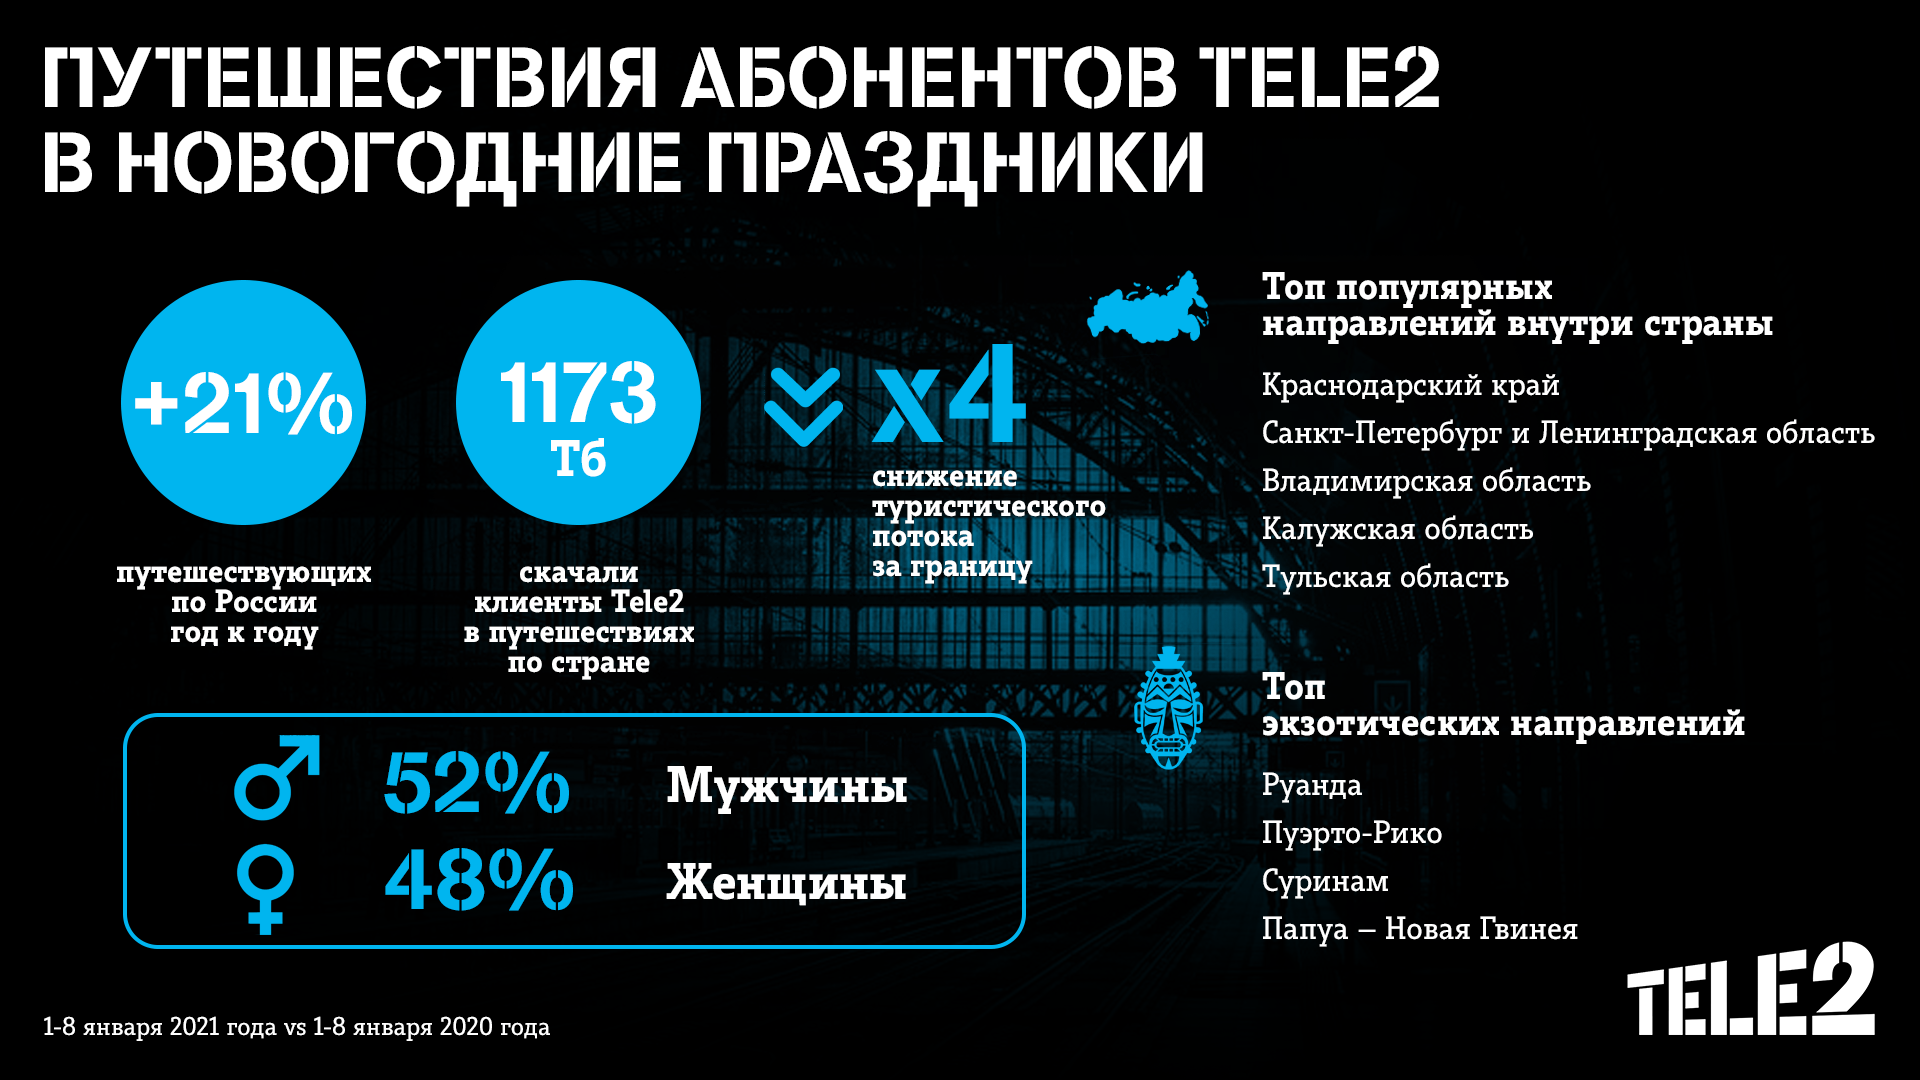 Для новогодних путешествий пензенские клиенты Tele2 выбирали Московскую область и Казахстан